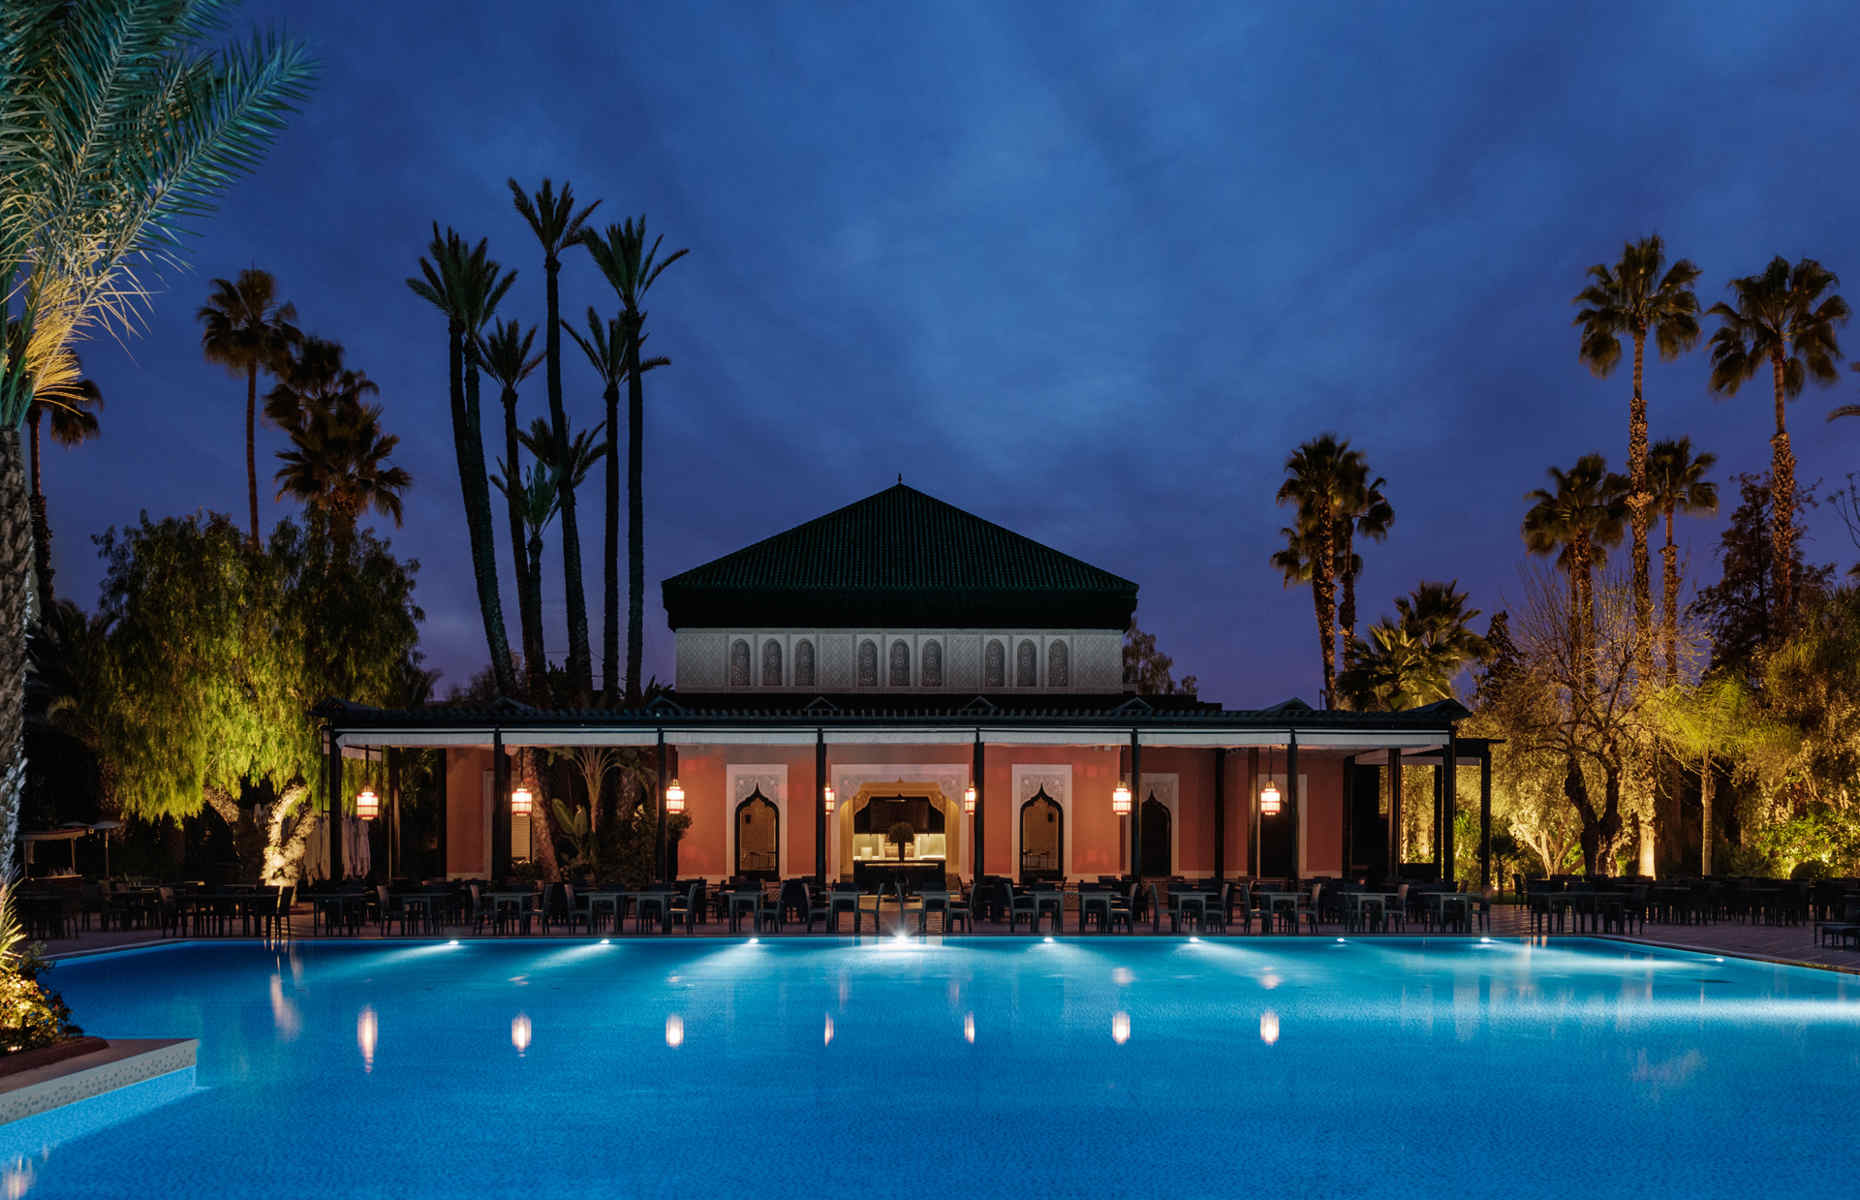 Pavillon de la piscine La Mamounia - Hôtel Marrakech, Maroc